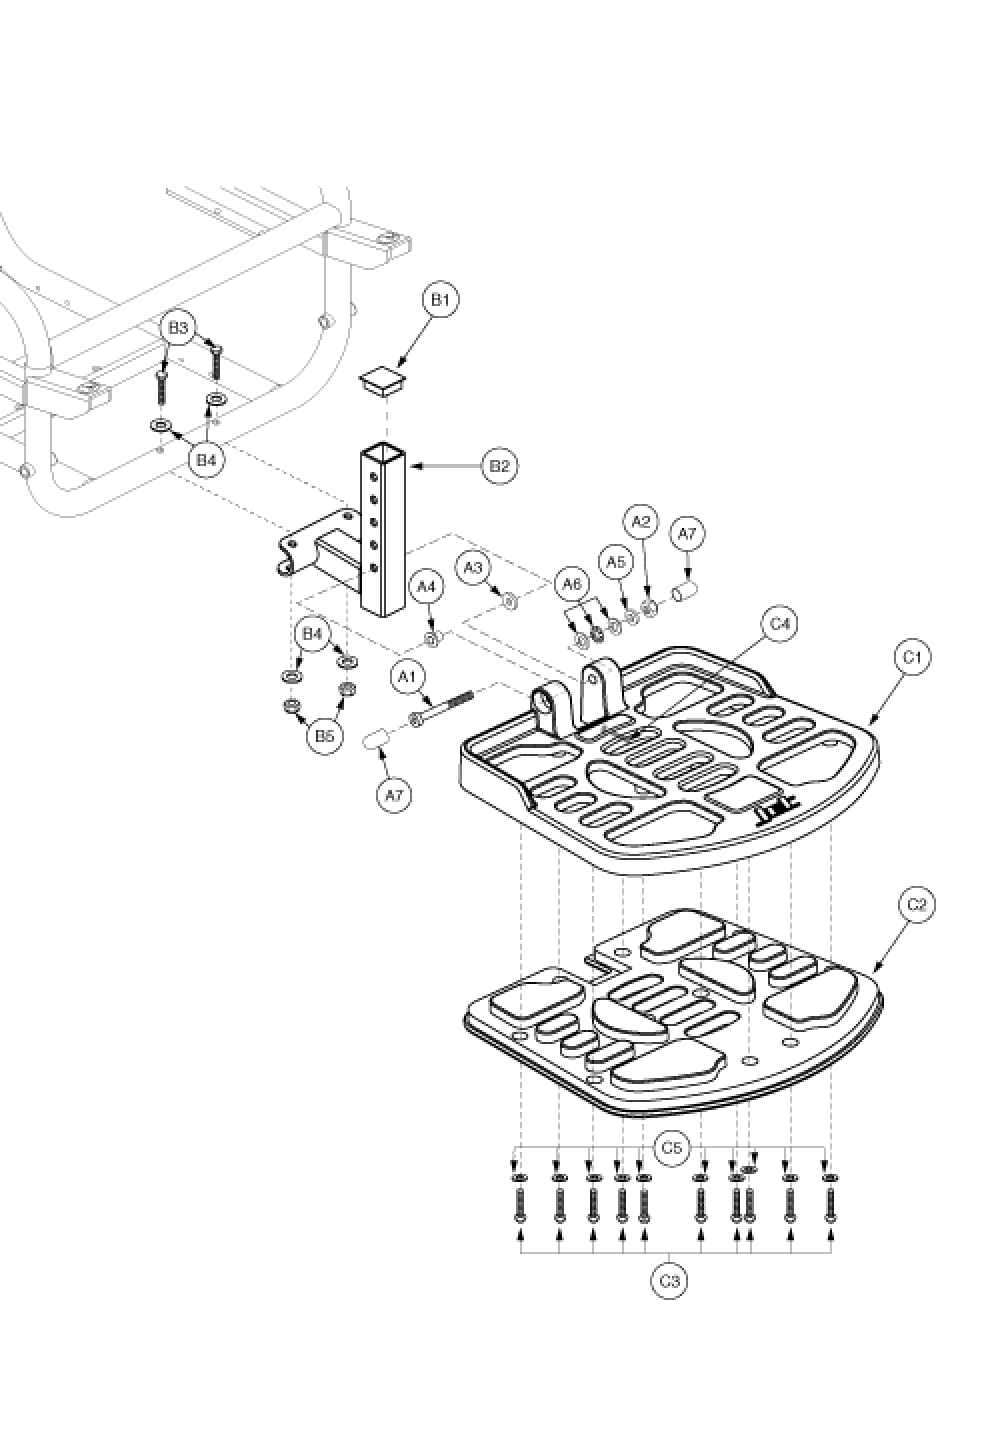 Footrest Assembly - Gen. 2 parts diagram